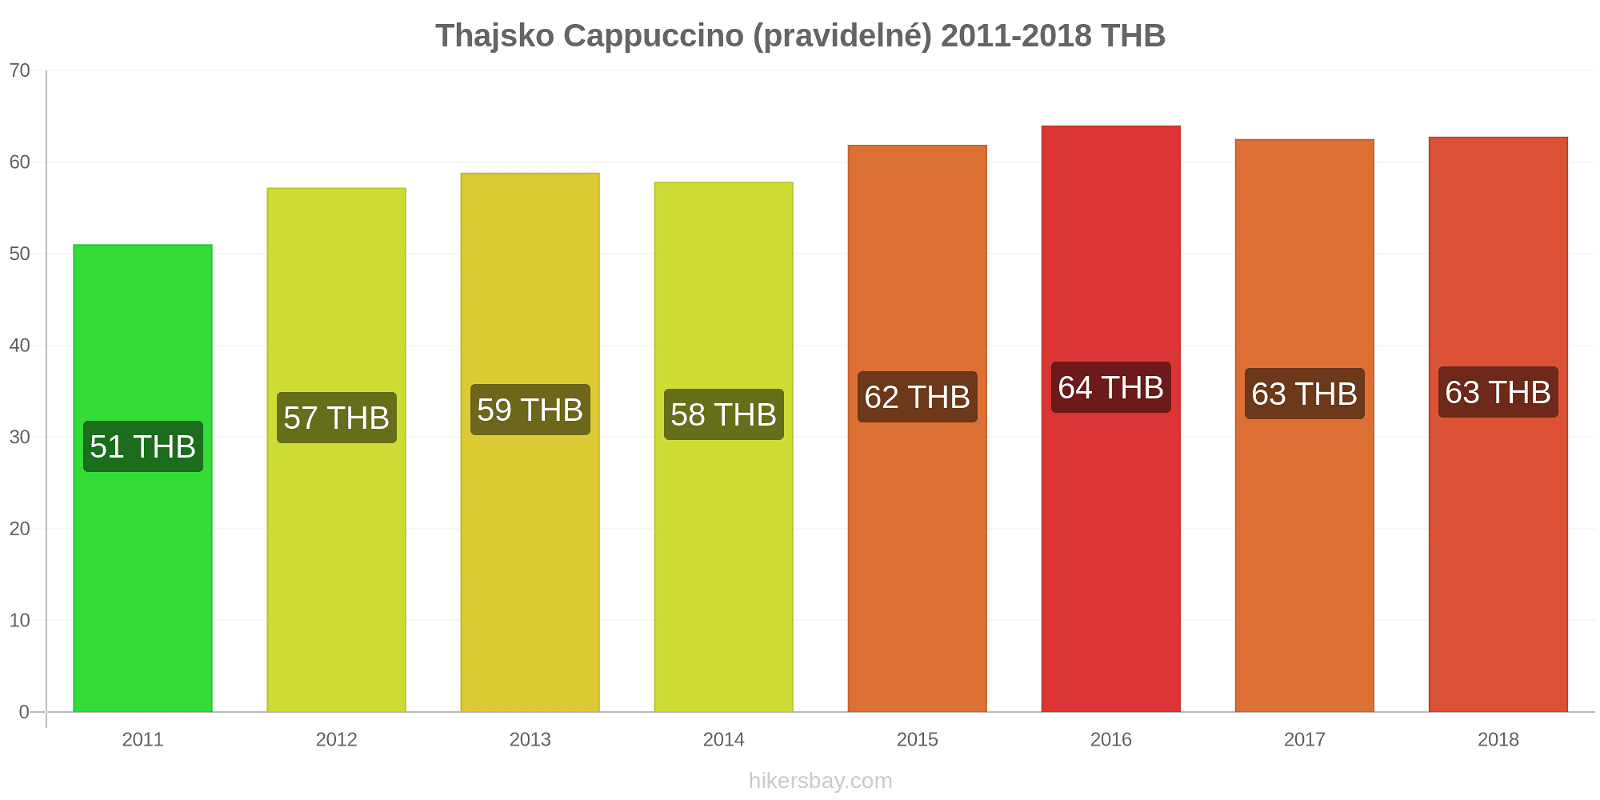 Thajsko změny cen Cappuccino hikersbay.com